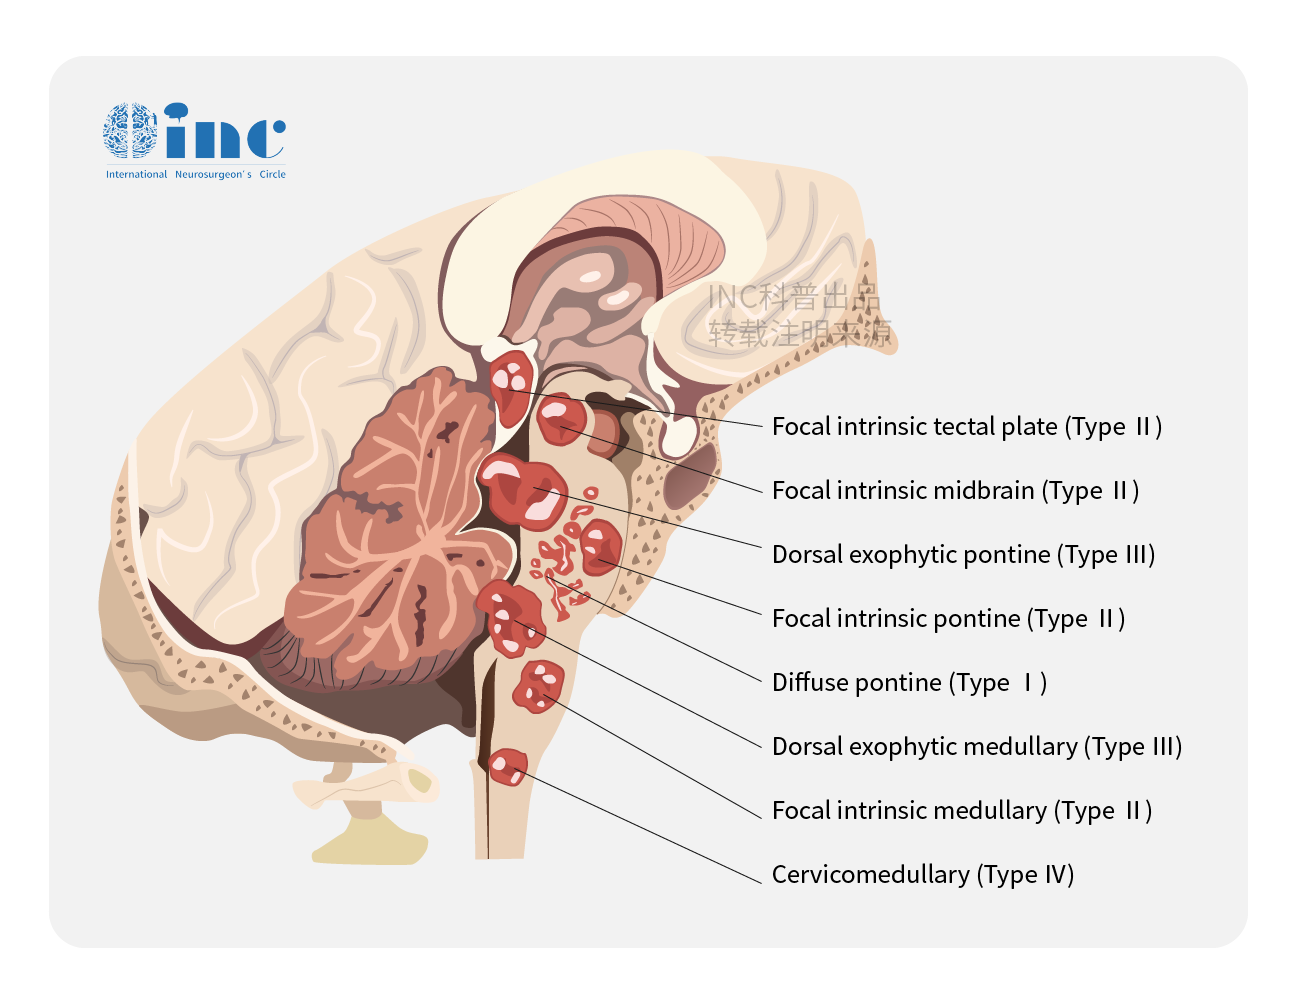 典型脑出血病例分享（含CT及MRI） - 病例中心(诊疗助手) - 爱爱医医学网